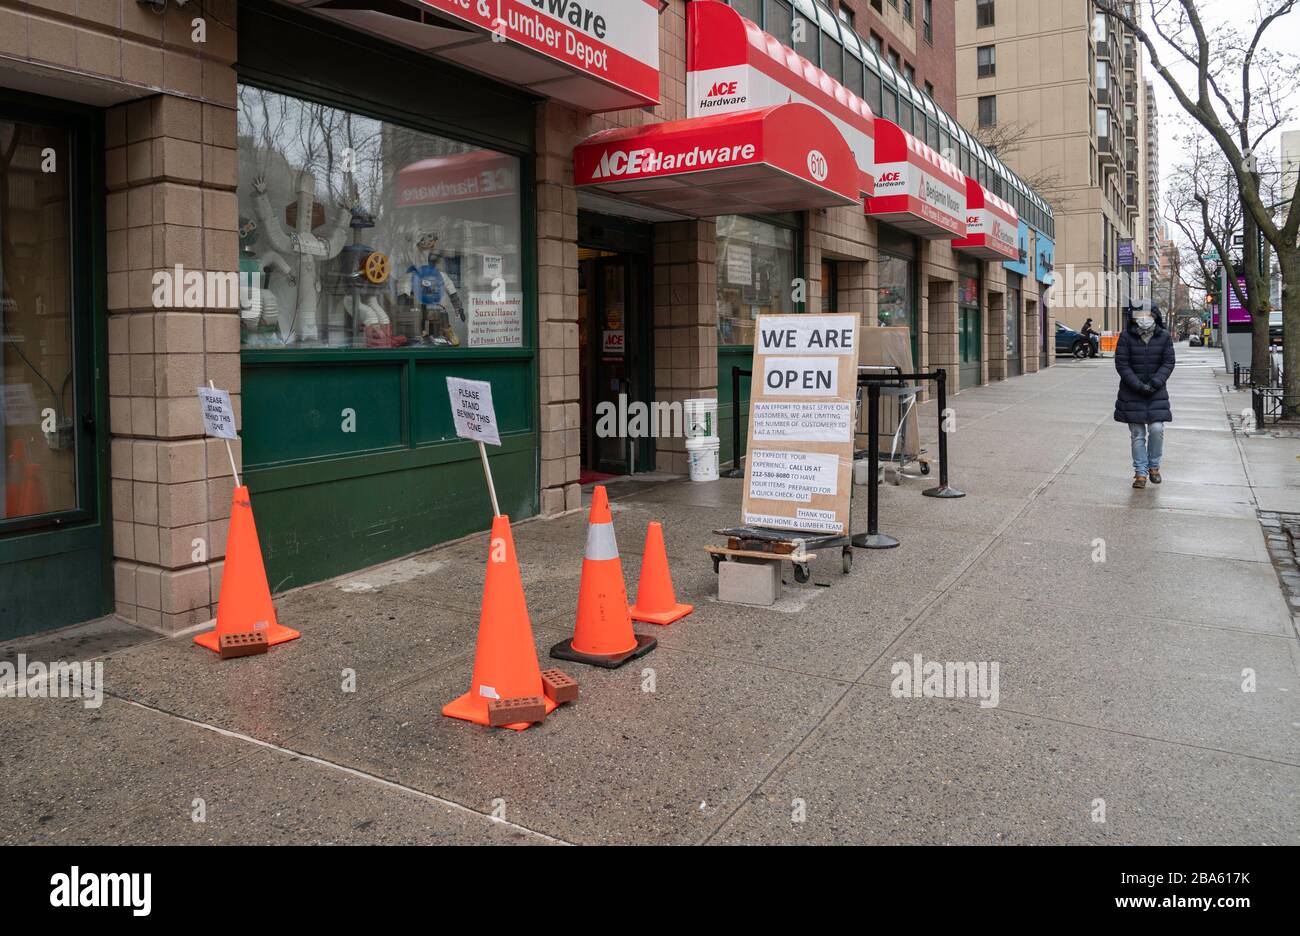 NUEVA YORK, NY - 25 DE MARZO DE 2020. Firme fuera de una tienda ACE hardware en el Upper West Side de Manhattan en la ciudad de Nueva York durante el brote de coronavirus en la ciudad de Nueva York. La Organización Mundial de la Salud declaró que el coronavirus (COVID-19) es una pandemia mundial el 11 de marzo. Foto de stock